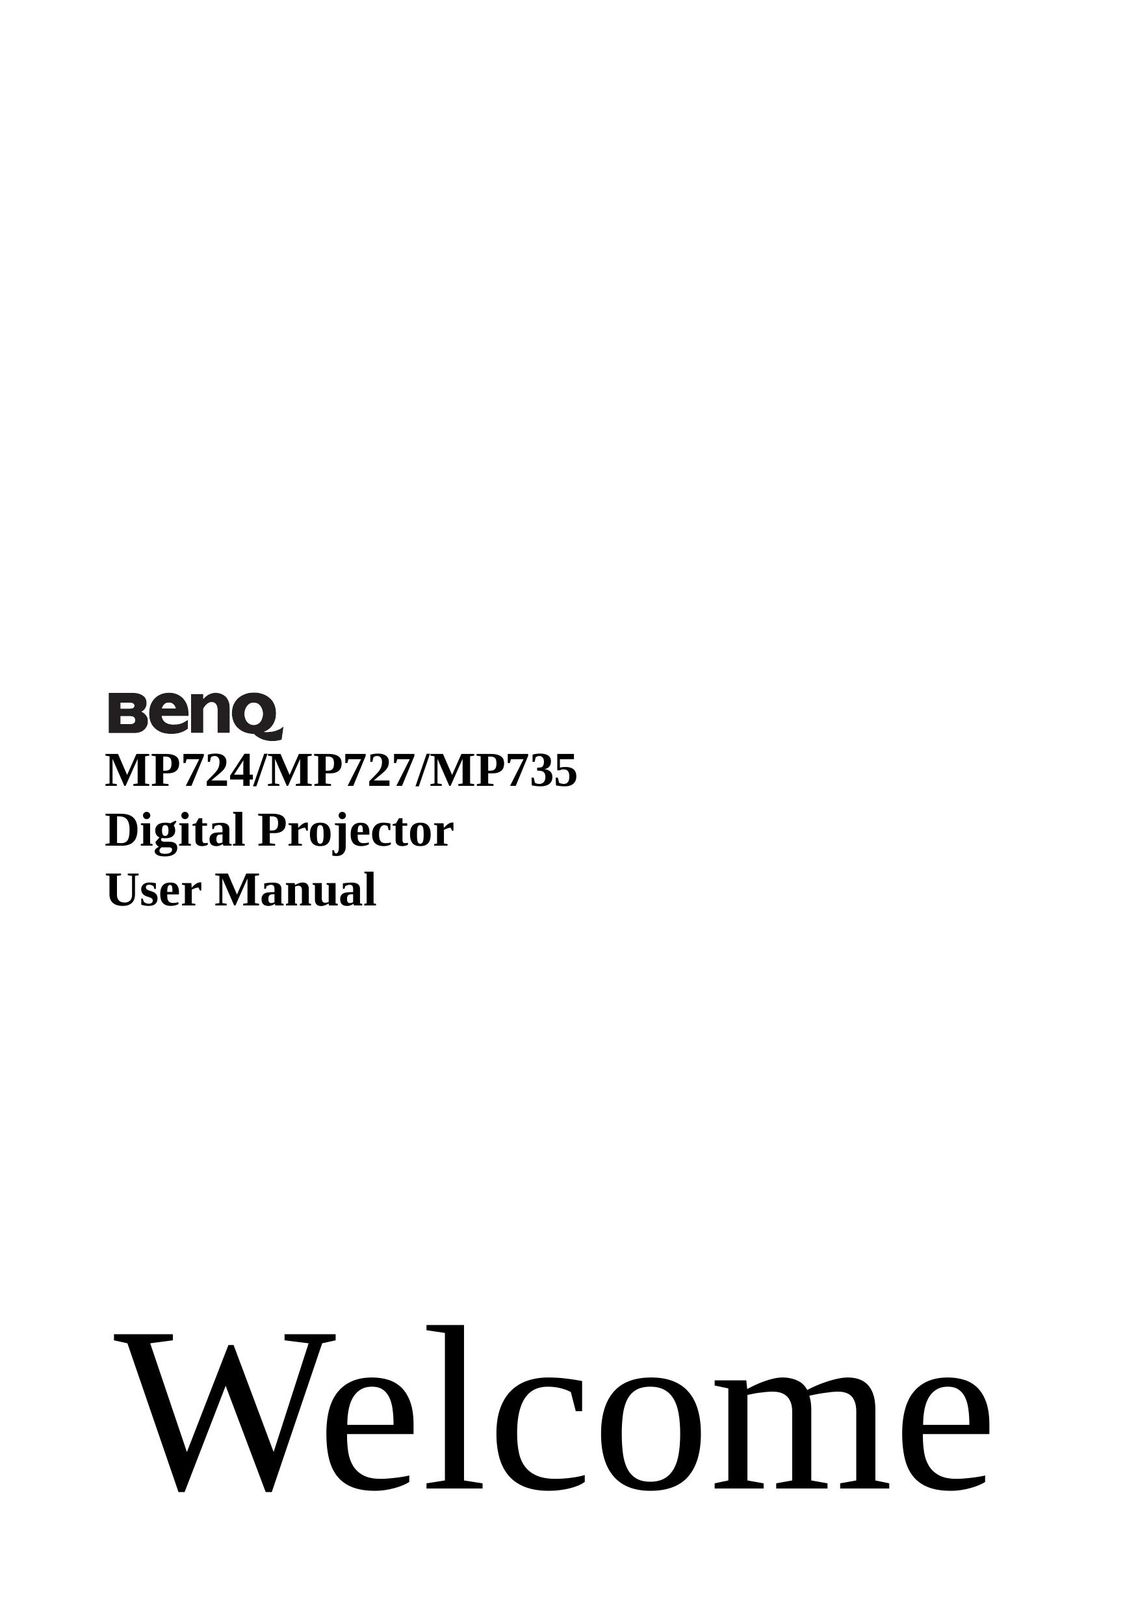 BenQ MP727 Projector User Manual